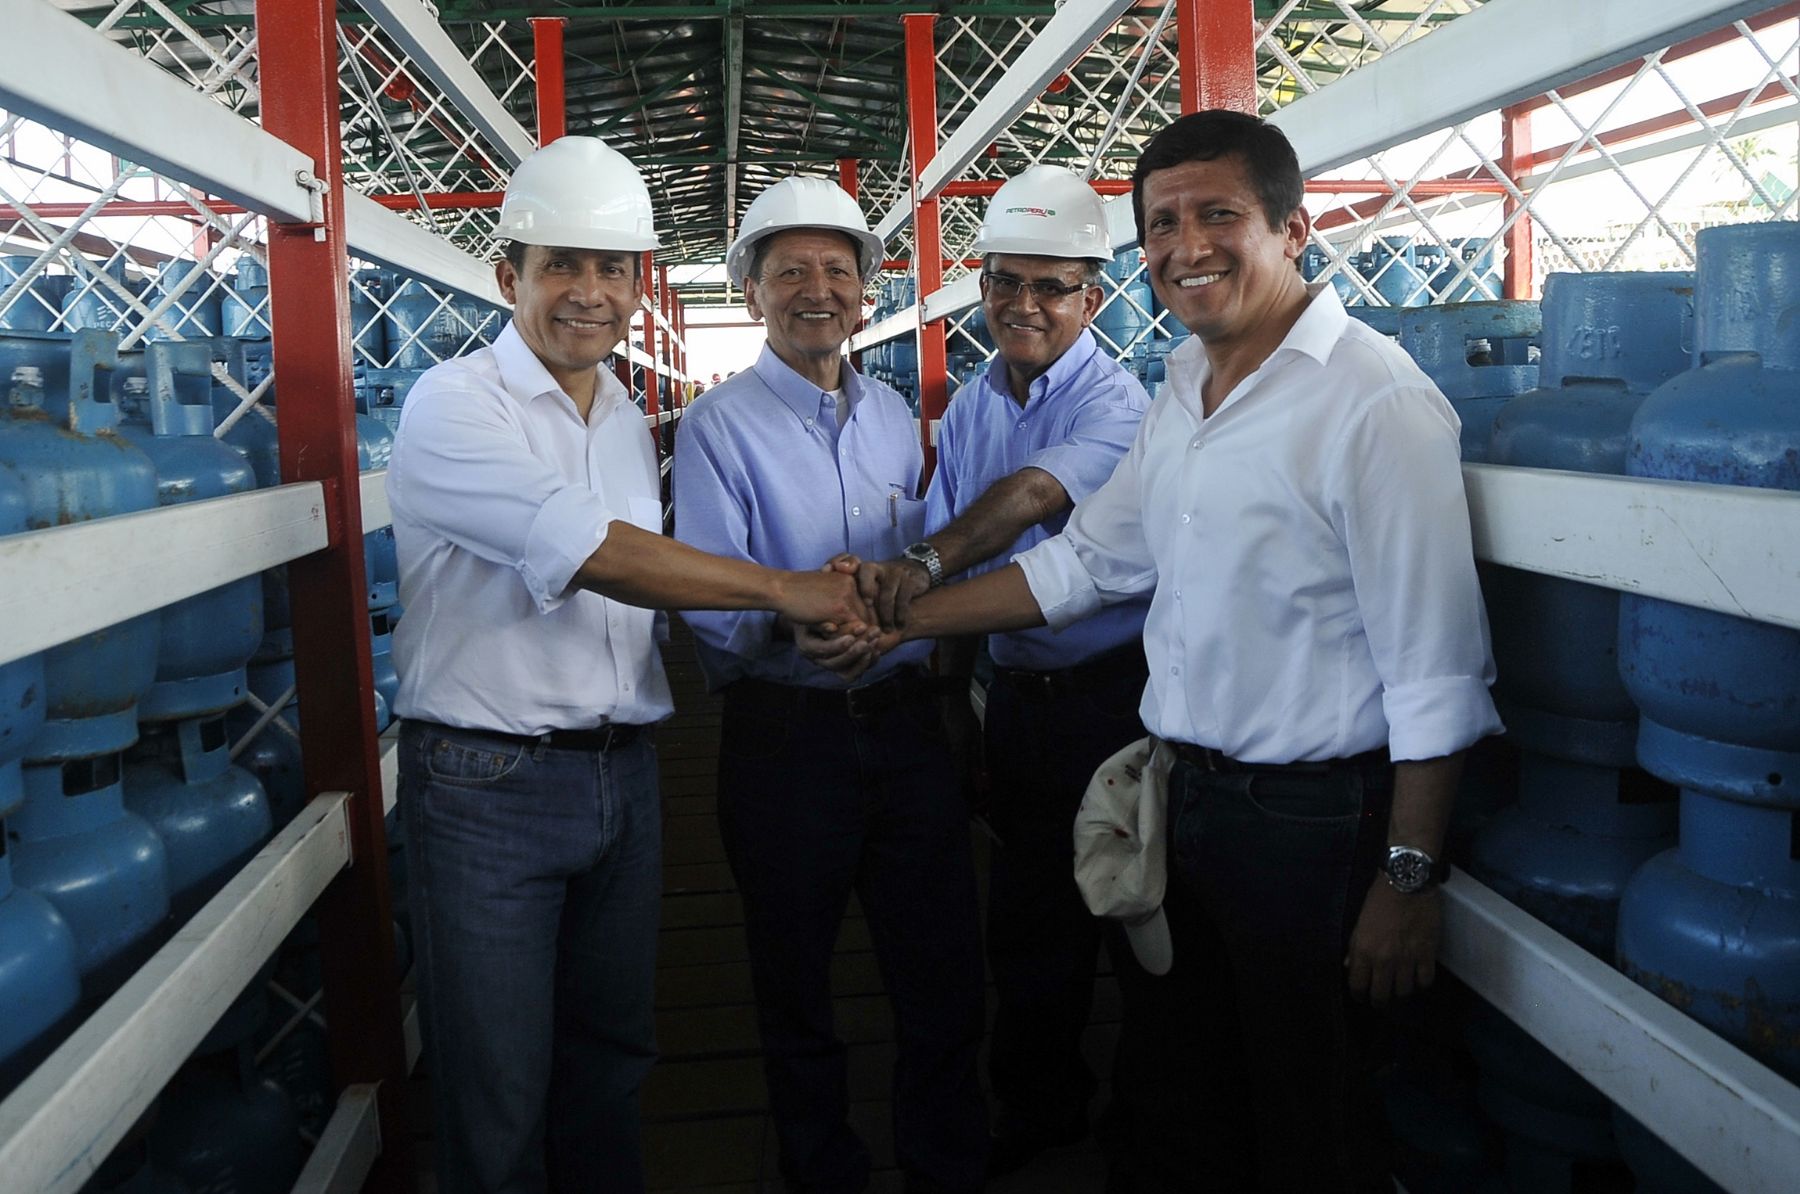 El Presidente Ollanta Humala inauguró el servicio de transporte fluvial de gas licuado de petróleo (GLP), a través de la barcaza “Samiria” de Petroperú, en la ciudad de Iquitos, región Loreto. ANDINA/Prensa Presidencia